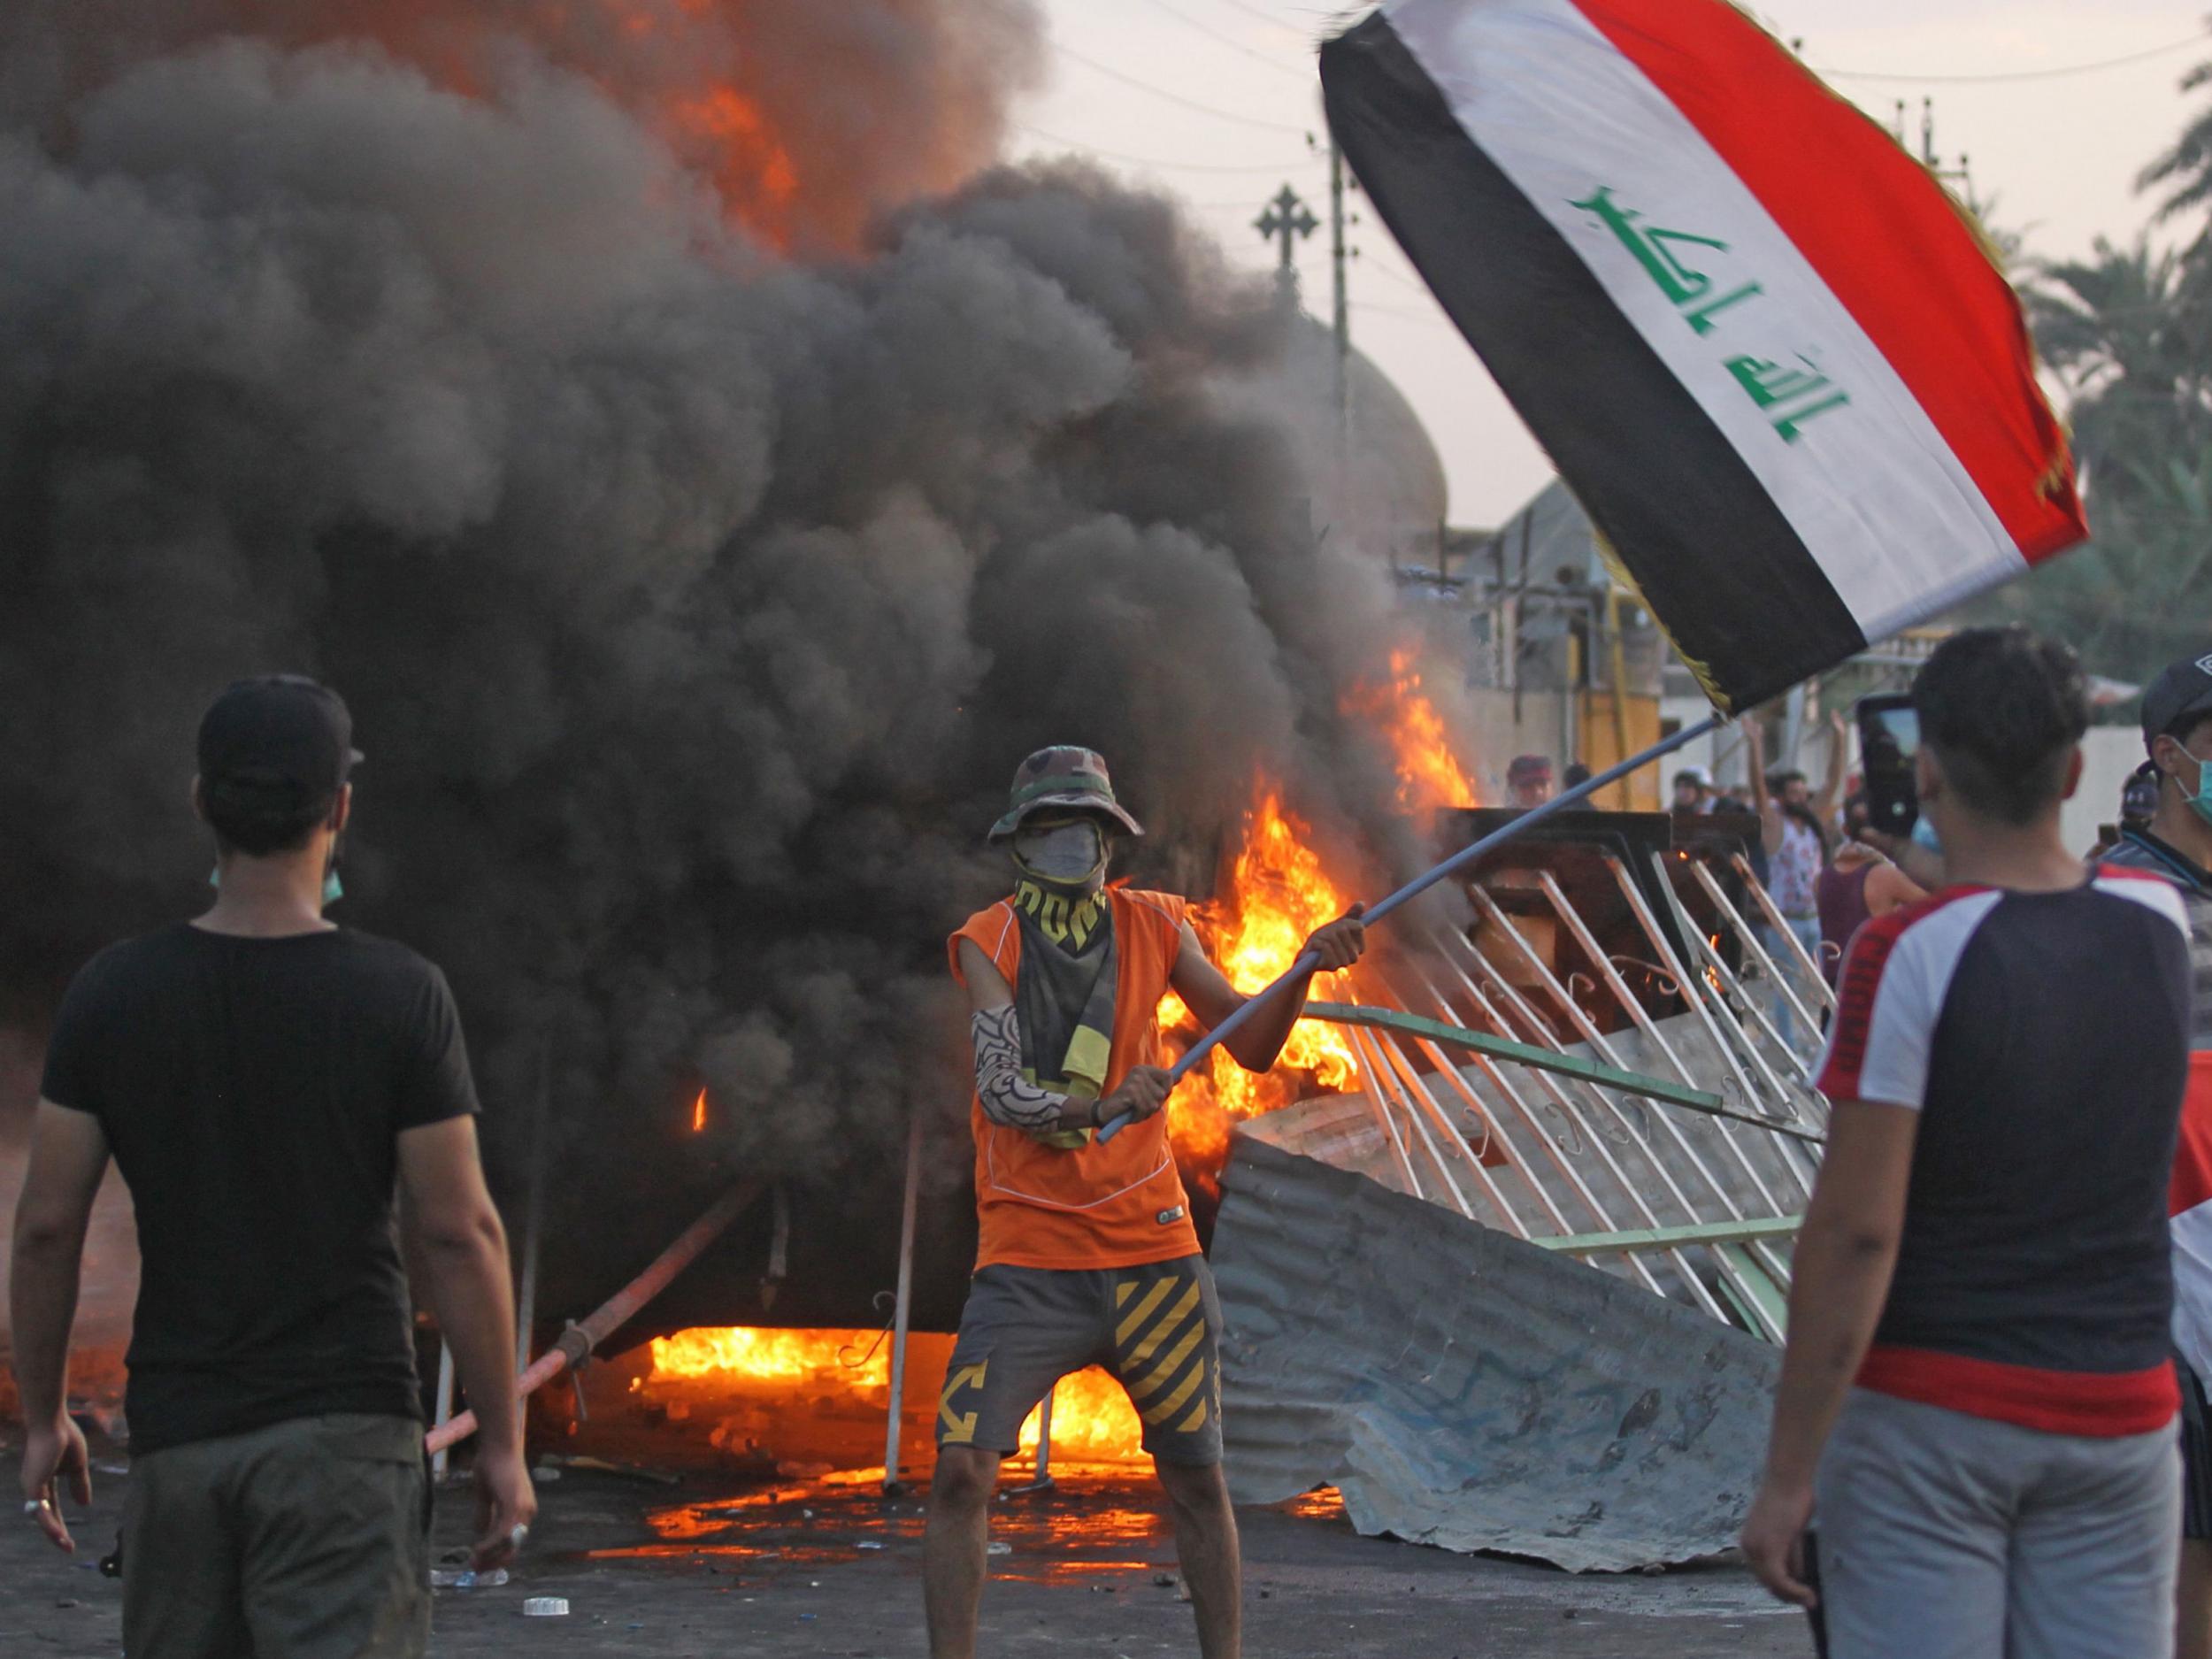 Άμεση εκκένωση του Ιράκ από τους Αμερικανούς ζήτησε το State Department: «Εγκαταλείψτε την χώρα με κάθε μέσο»